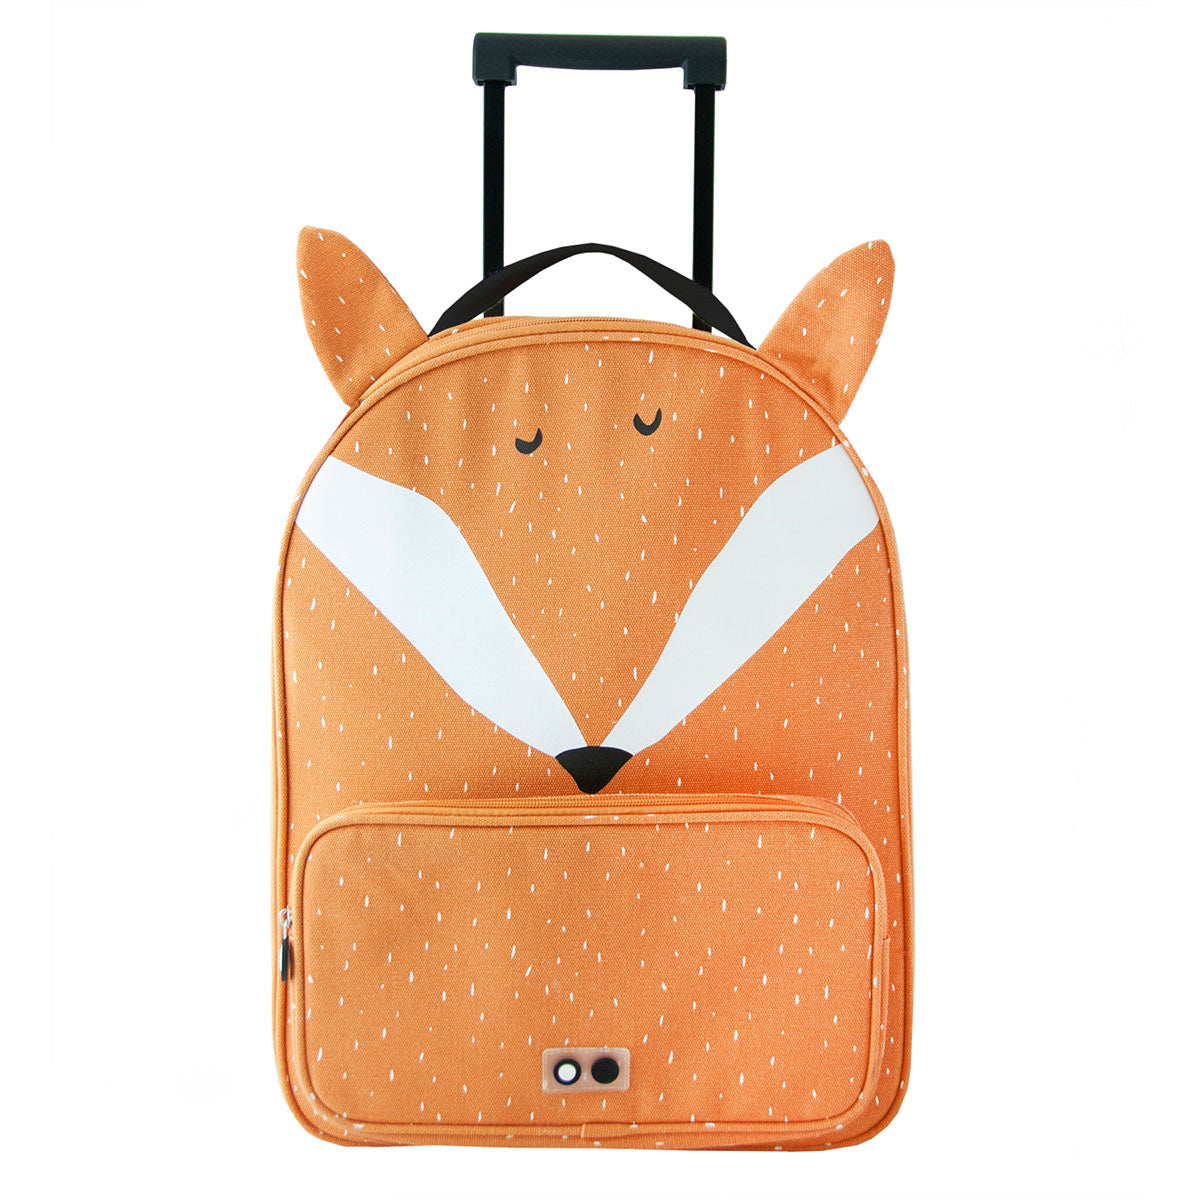 Ik ga op reis en ik neem mee... De Trixie Mr. Fox reistrolley! Deze oranje trolley heeft een vosje op de voorkant en is precies op maat gemaakt voor de avonturen van je kindje. VanZus.